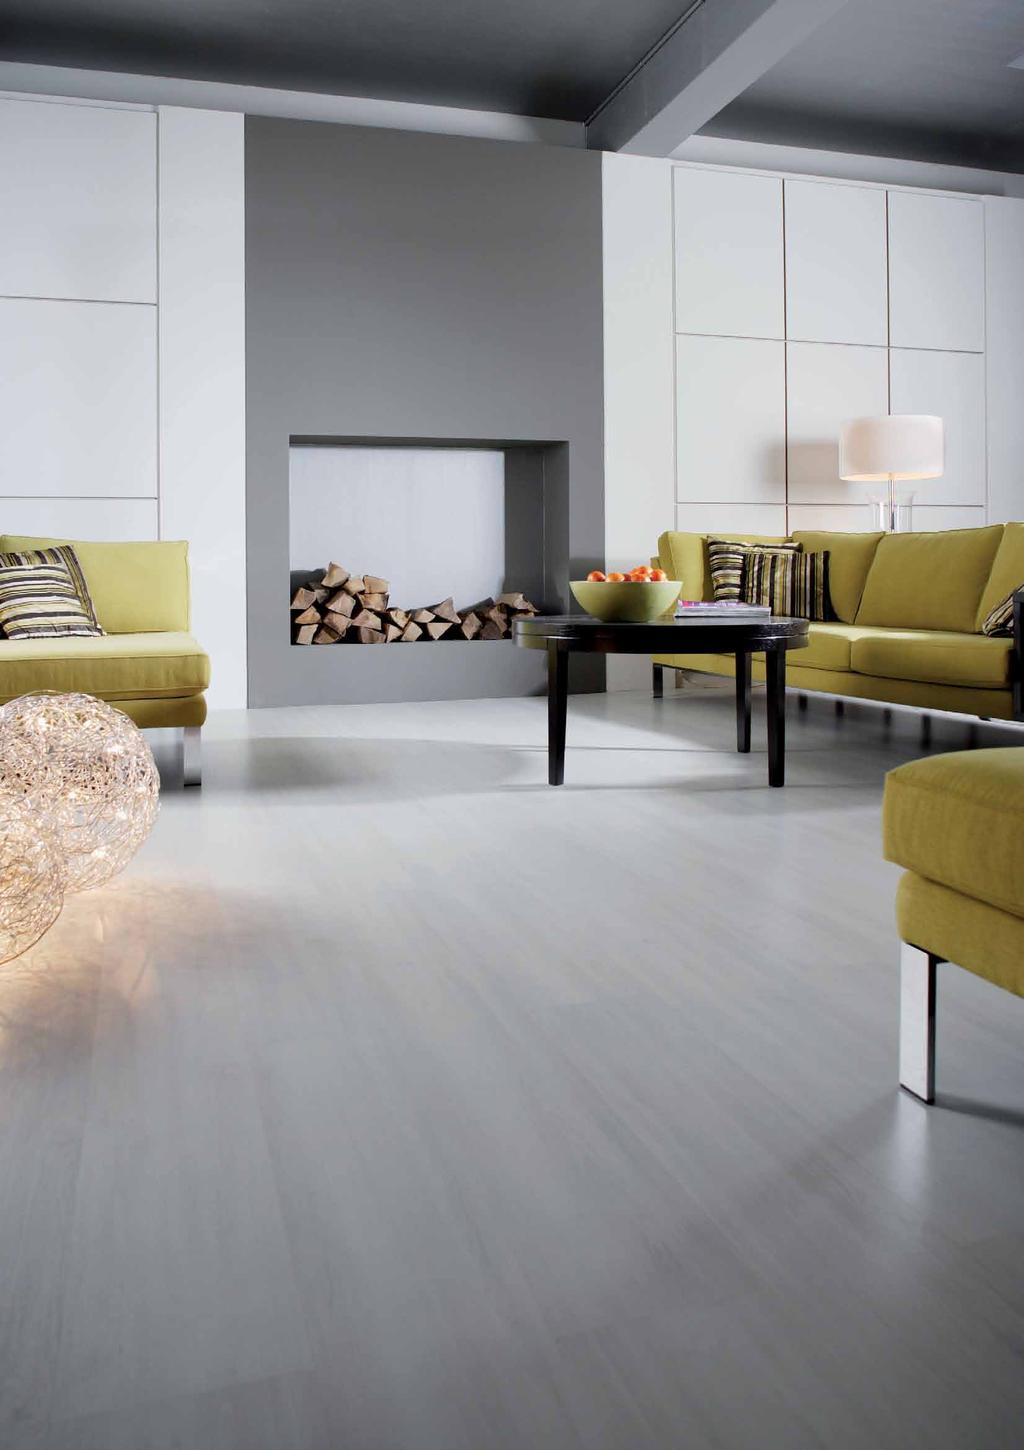 RAGASZTANDÓ VINYL A vinyl padlón sétálva méltányolni fogja a padló felületének melegségét, amit a padlófűtés is fokozhat. A padló beépítési magassága 2 mm, ami ideális felújítások esetén.